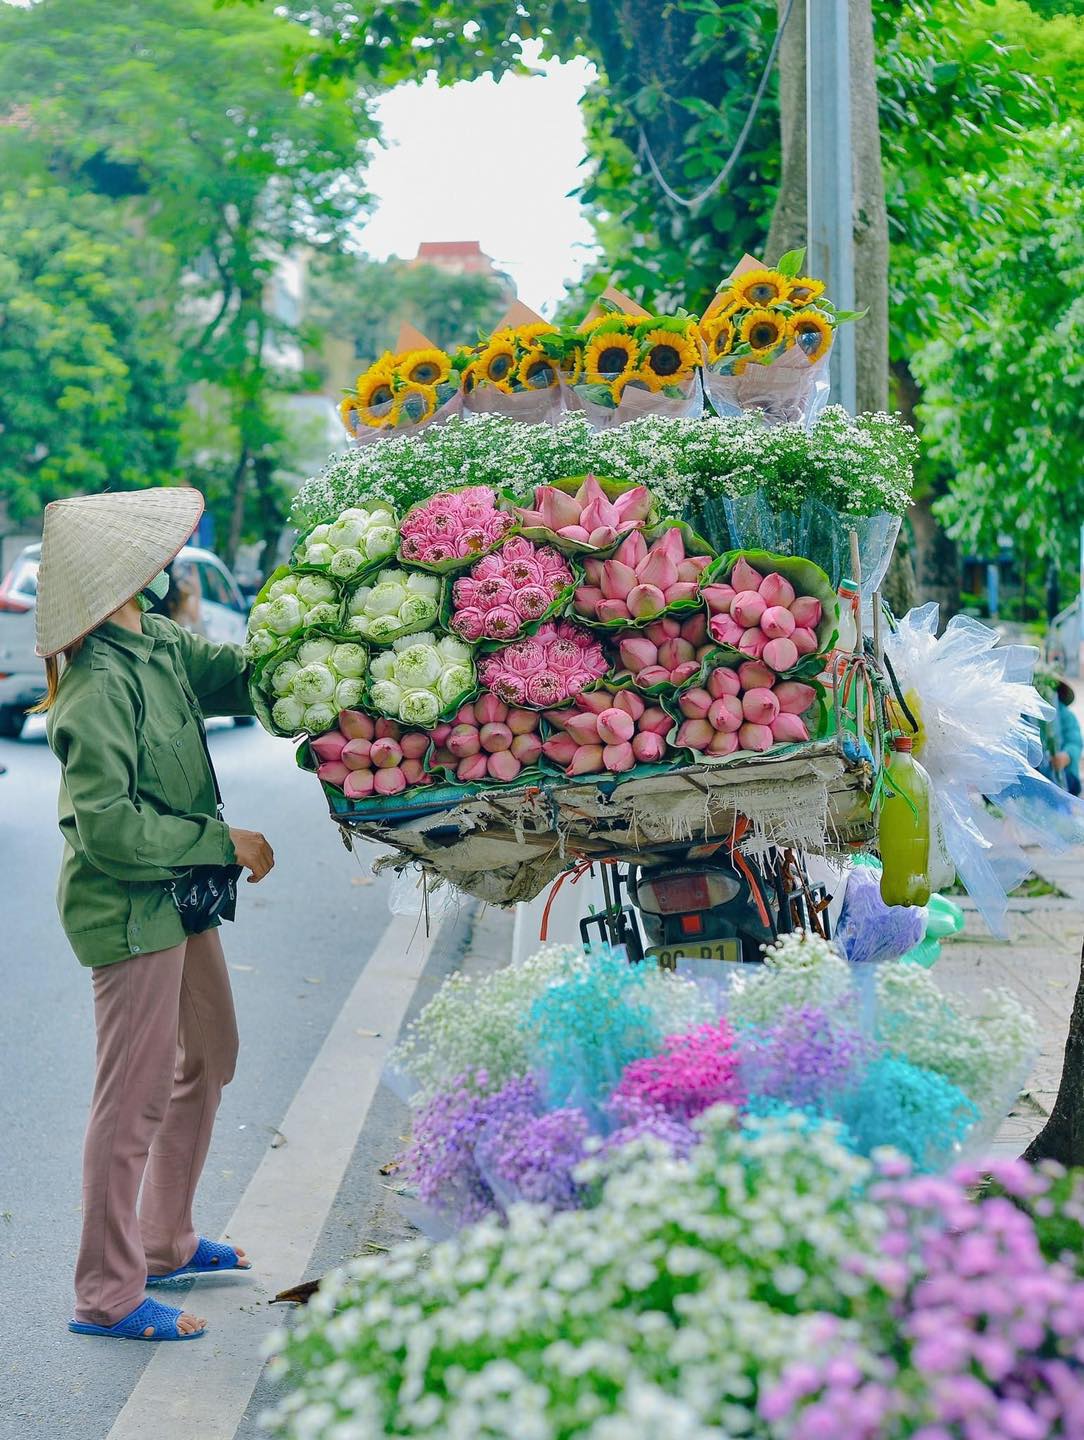 Cộng đồng mạng chia sẻ sự mê mẩn những gánh hoa trên phố Hà Nội: "Những điều bình bị mà thành phố khác không có"